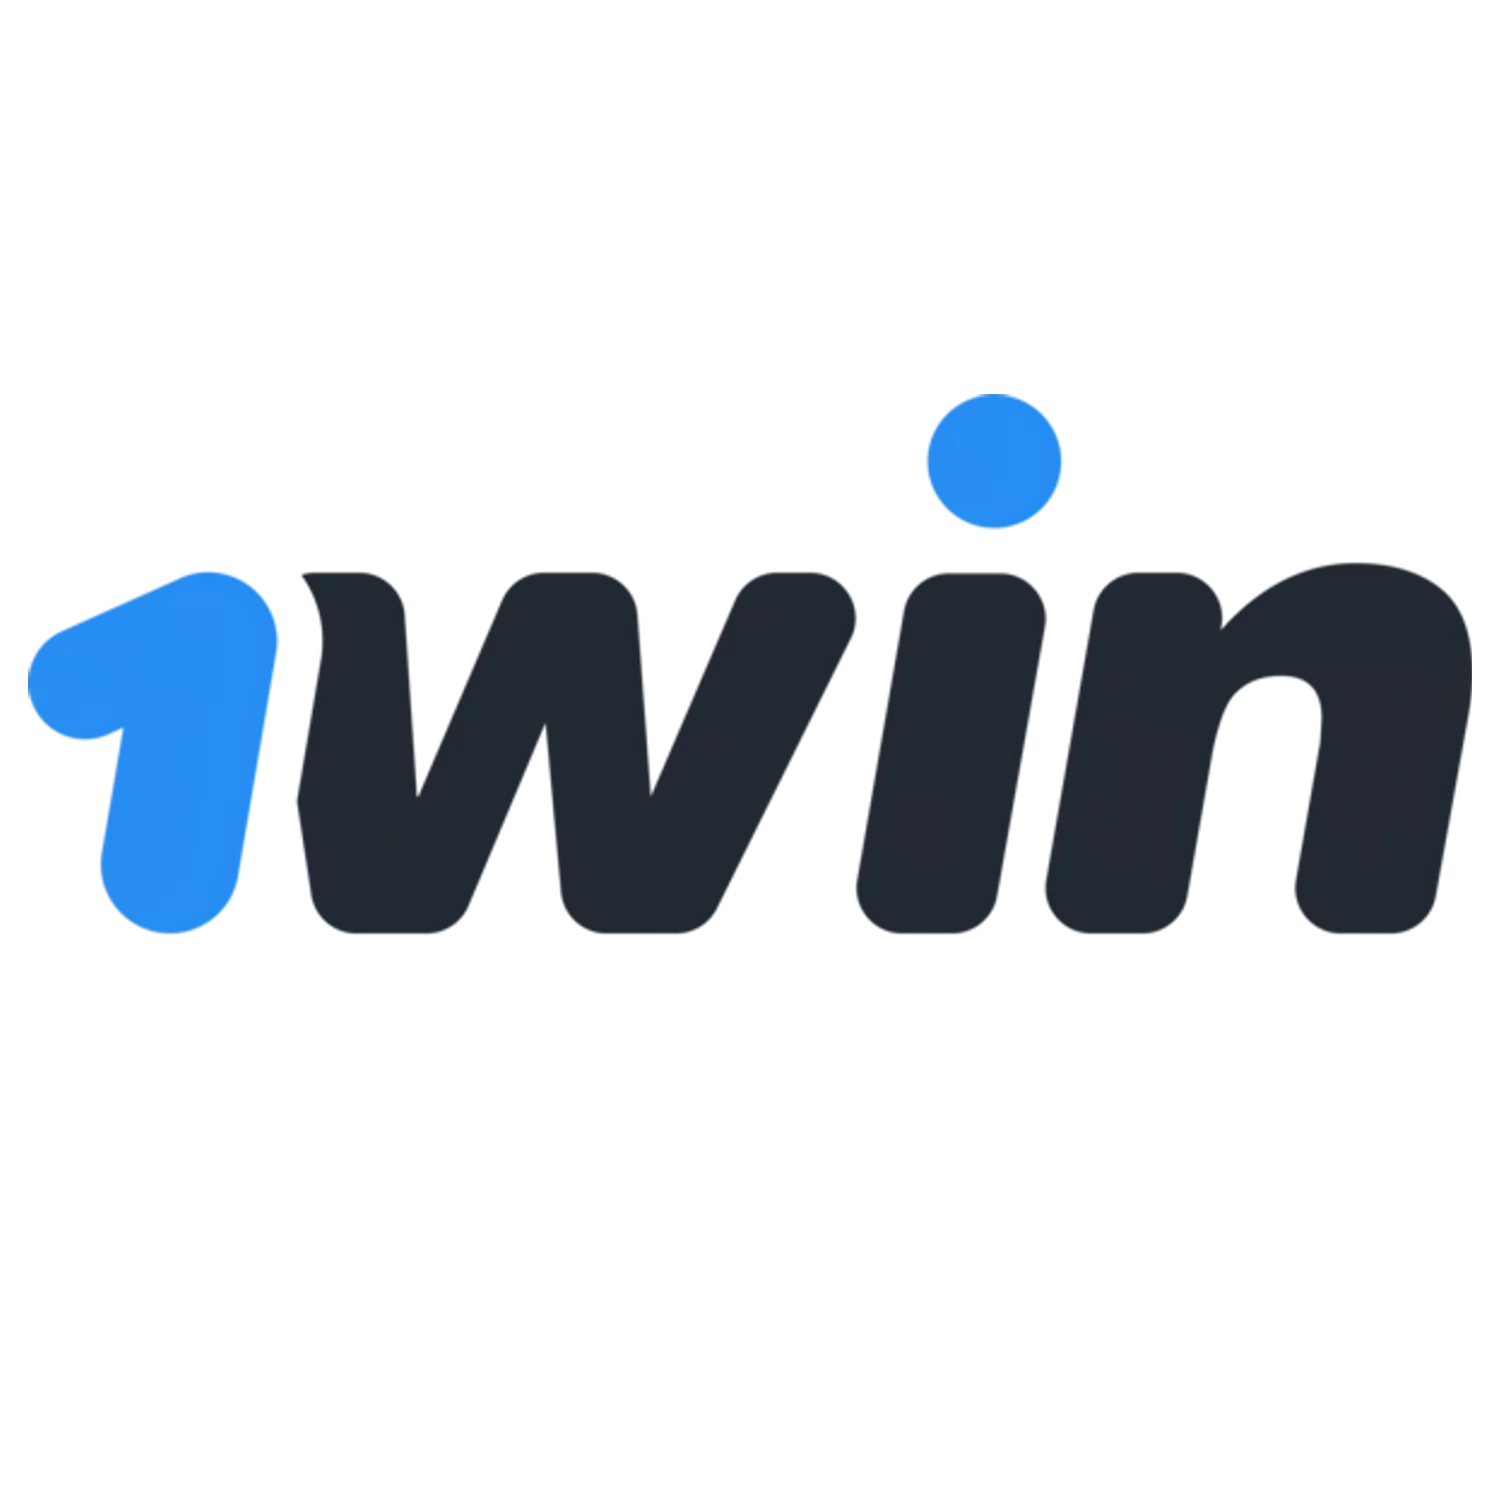 1win दुनिया के सबसे बड़े सट्टेबाजों में से एक है।